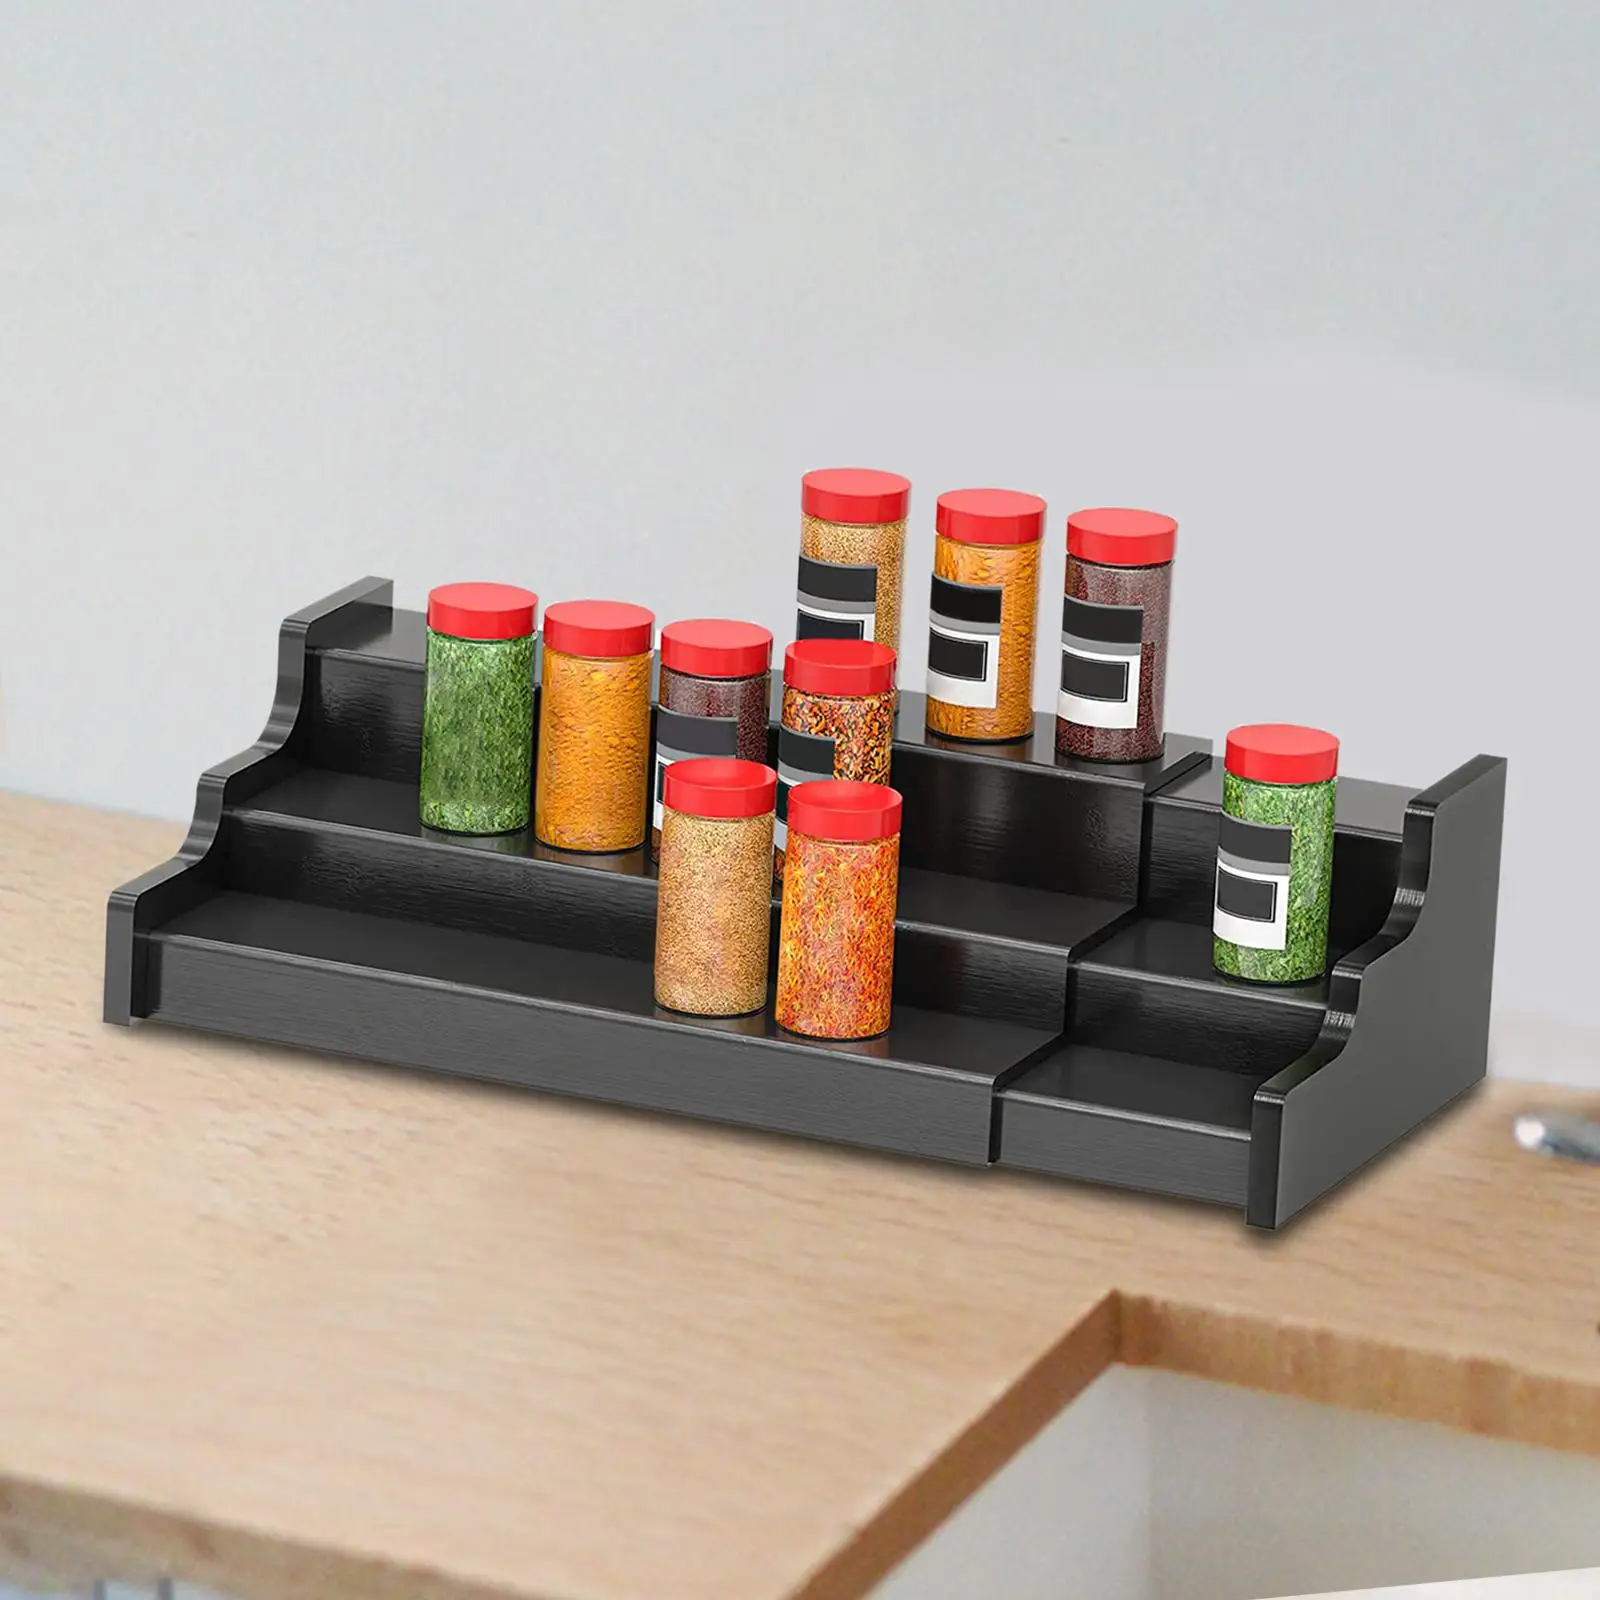 Spice Jars Rack Seasoning Bottle Storage Holder Ladder 3 Tier Display Kitchen Organizer for Home Pantry Countertop Kitchen